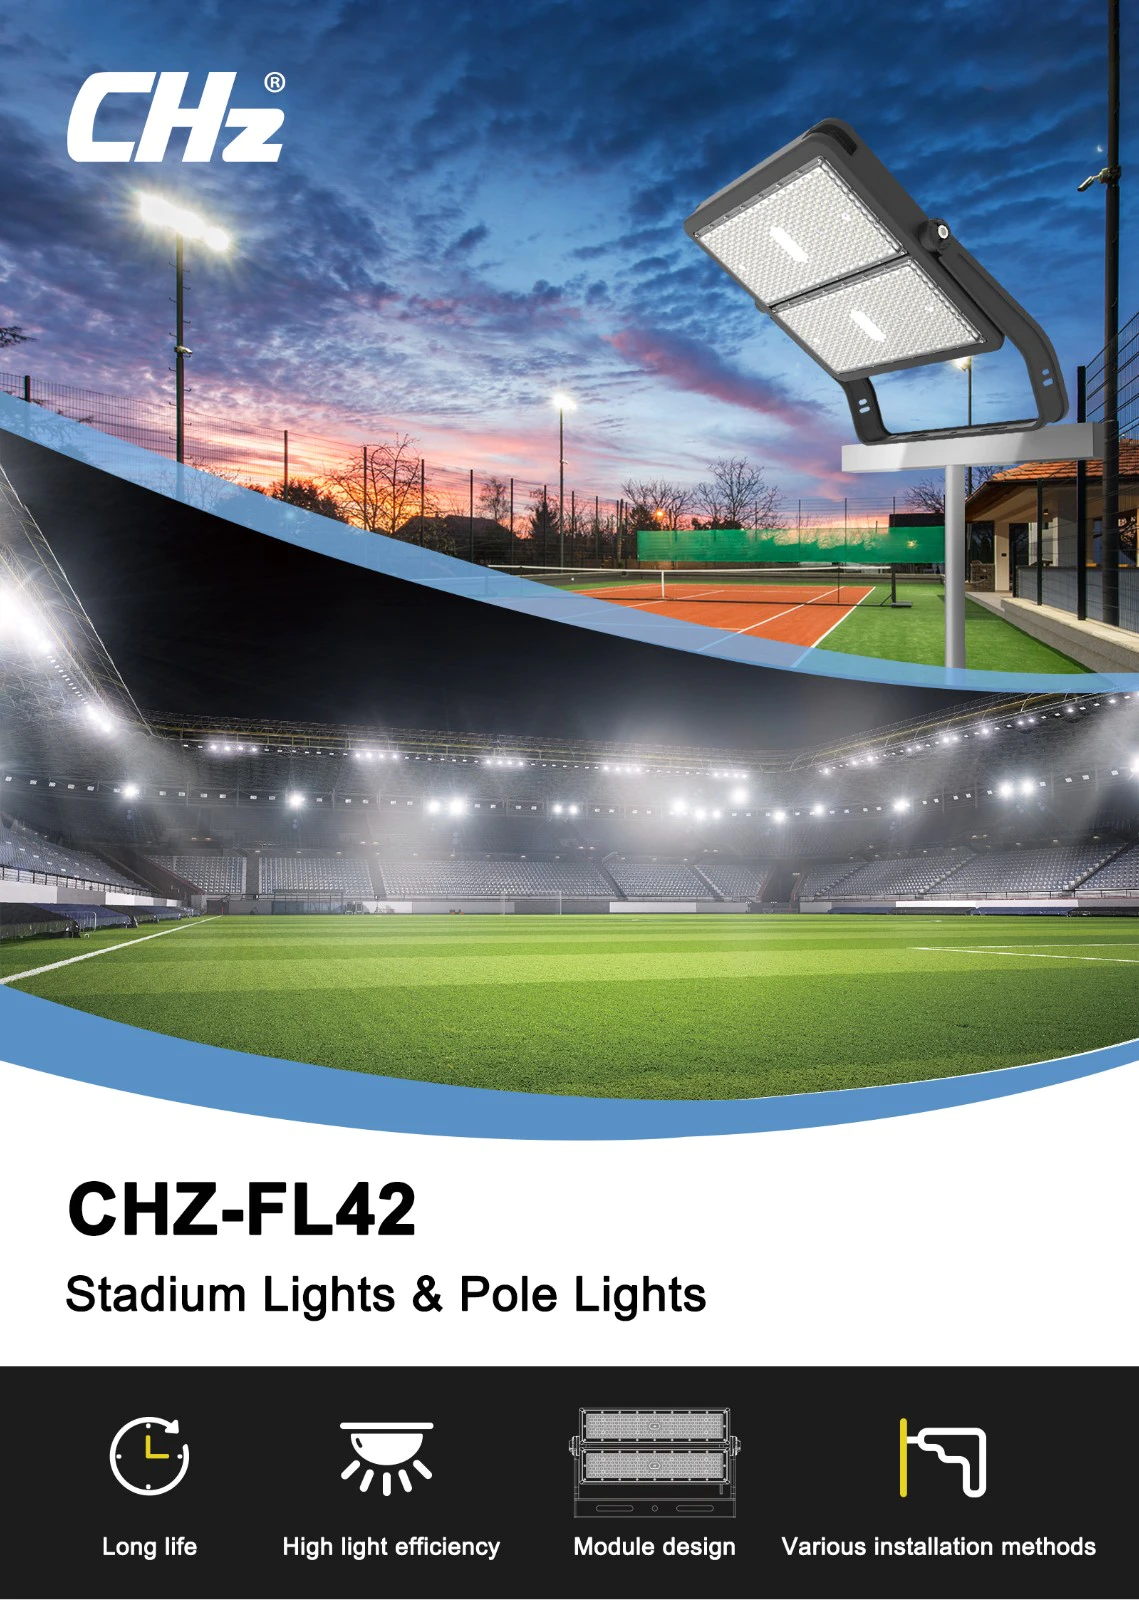 CHZ Lighting cricket stadium lighting system dealer for badminton court